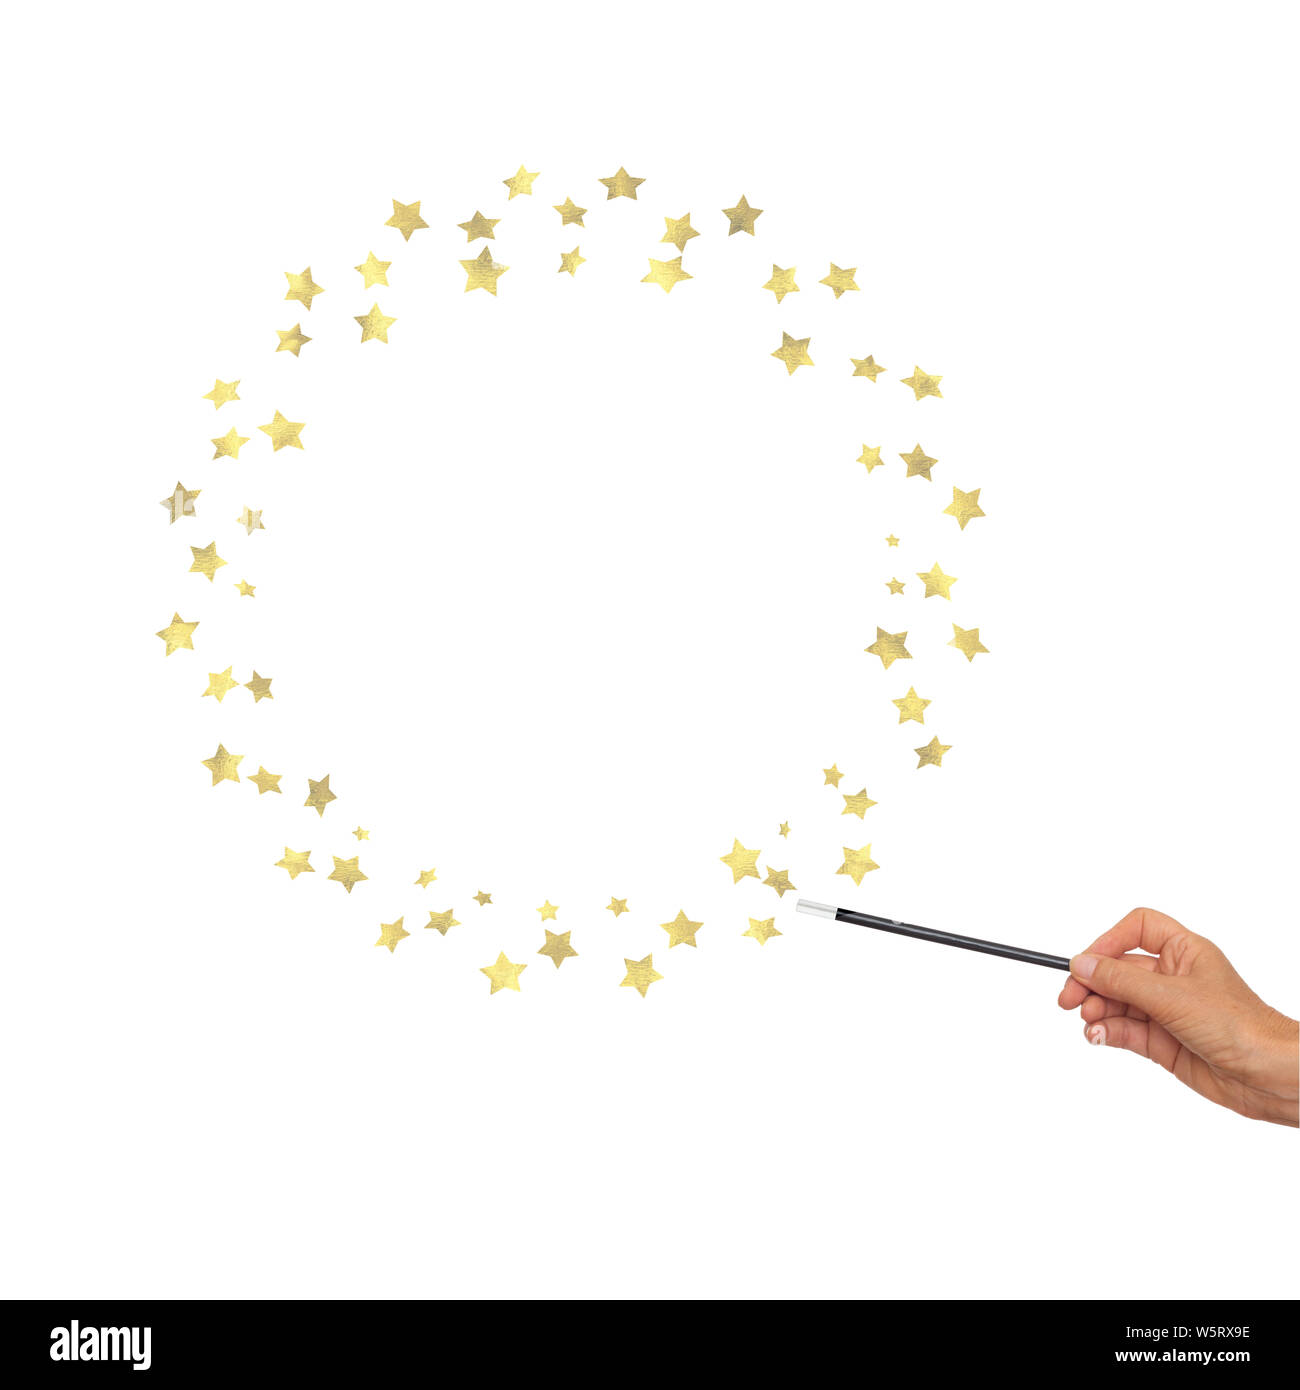 Zauberstab in der Hand mit goldenen Sternen für Rahmen, Grenze. Weißer Hintergrund. Stockfoto